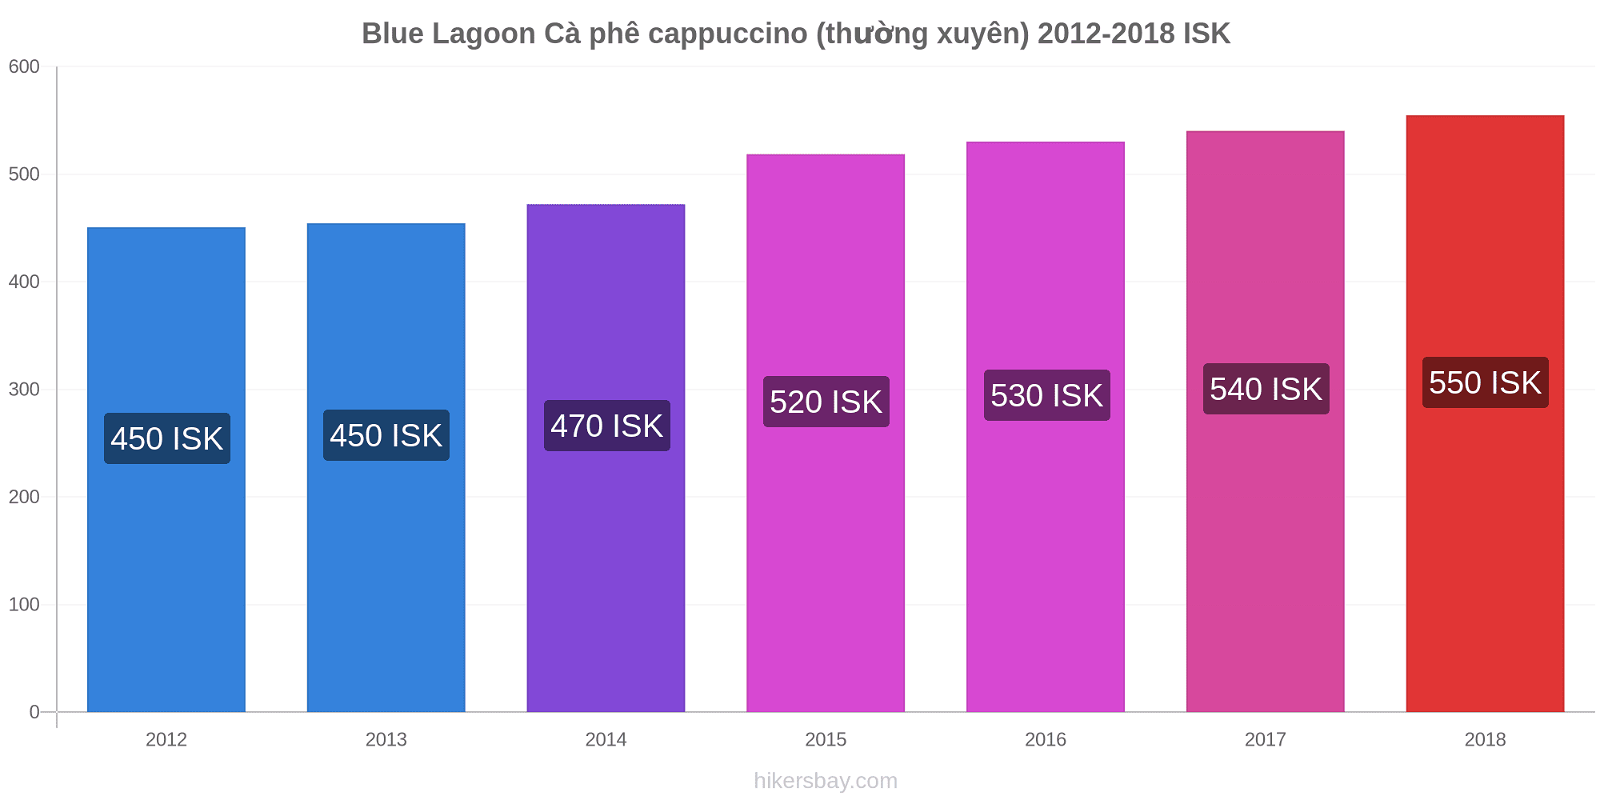 Blue Lagoon thay đổi giá Cà phê cappuccino (thường xuyên) hikersbay.com